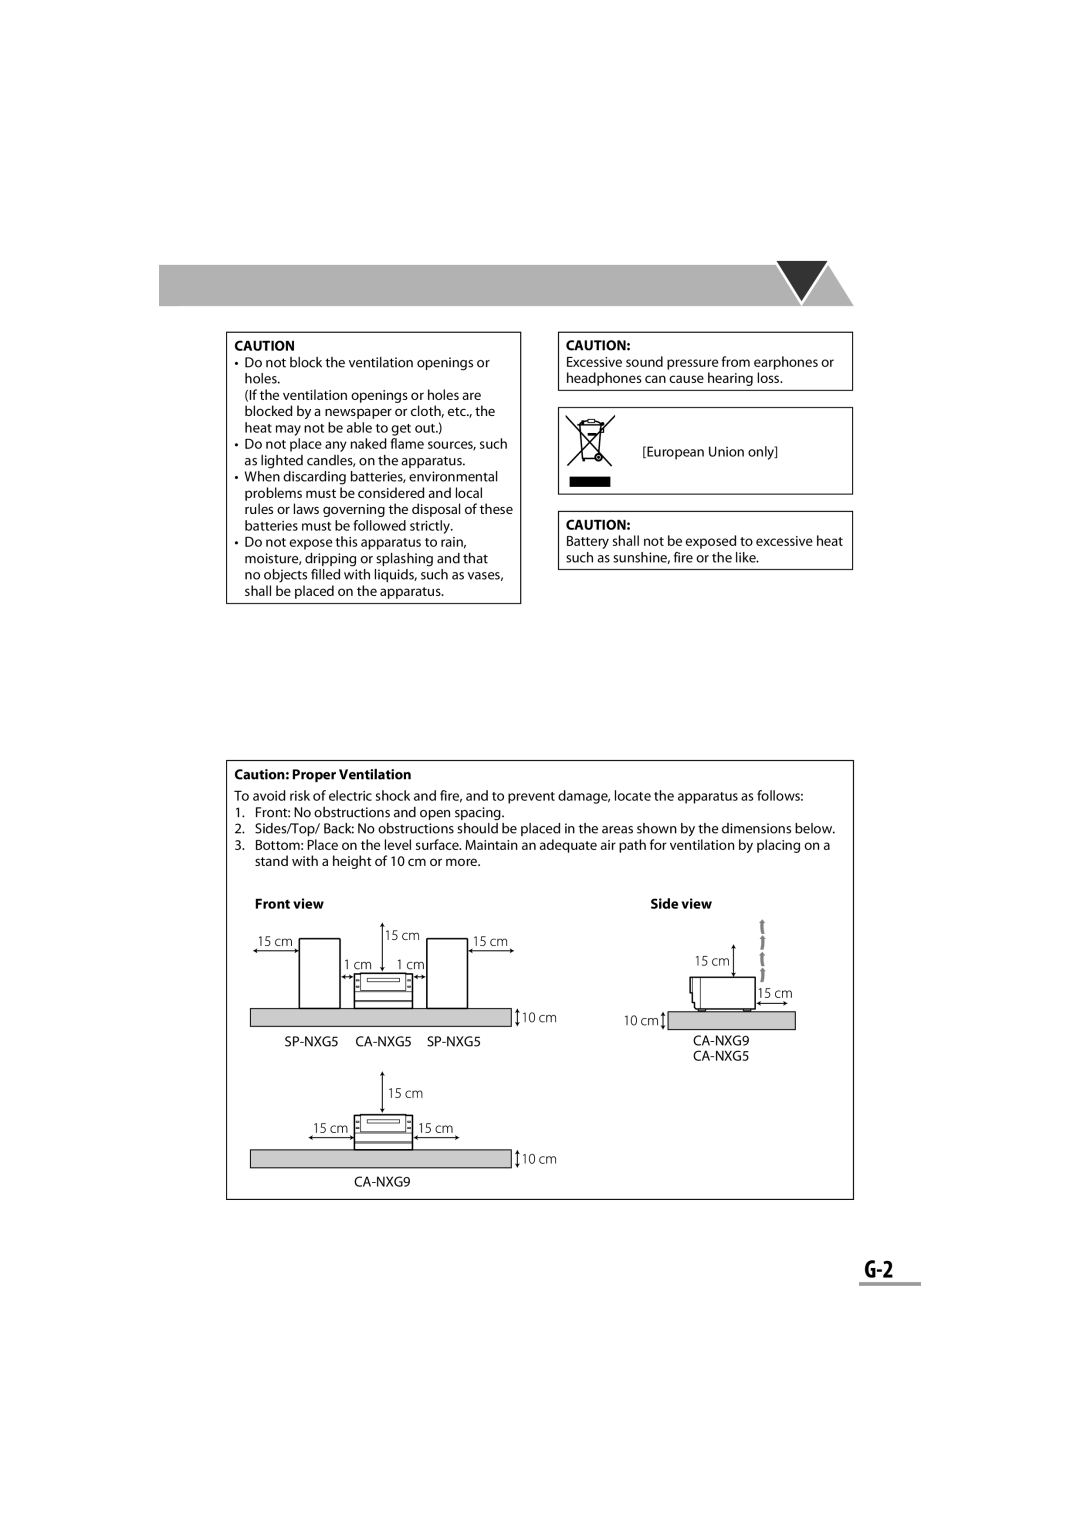 JVC CA-NXG9 manual Caution: Proper Ventilation, Front view, Side view 